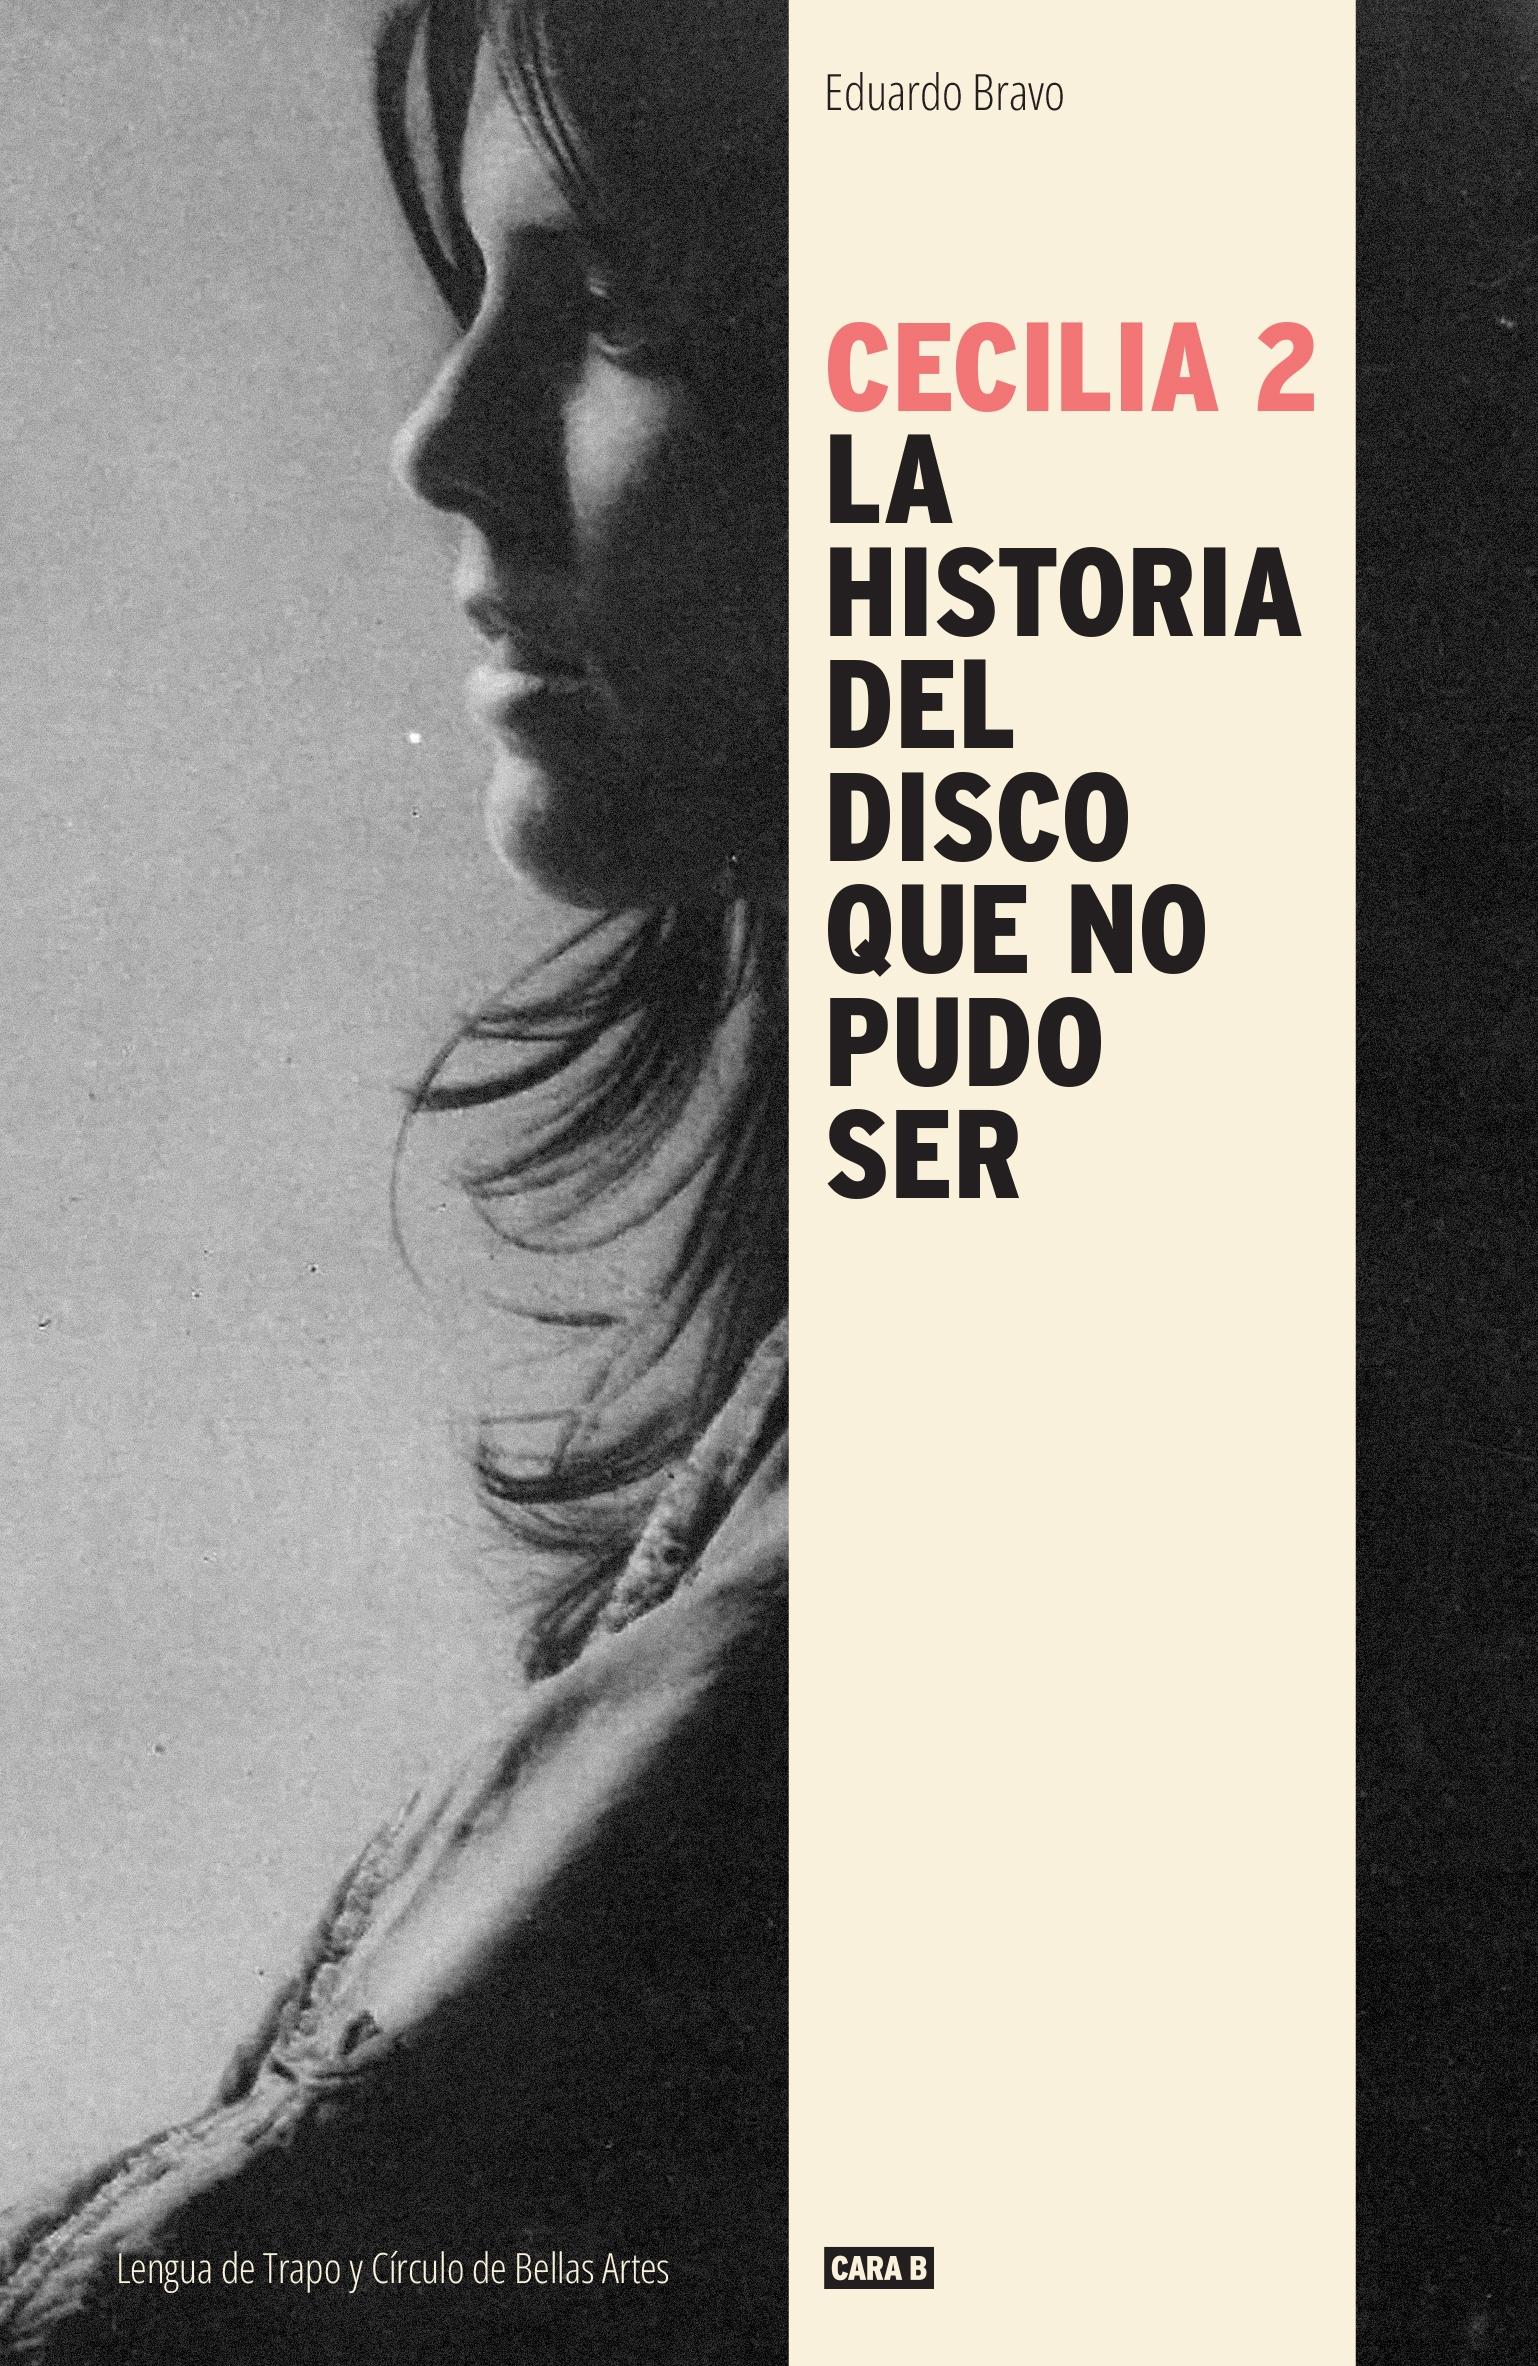 Cecilia 2 "La Historia del Disco que no Pudo Ser". 